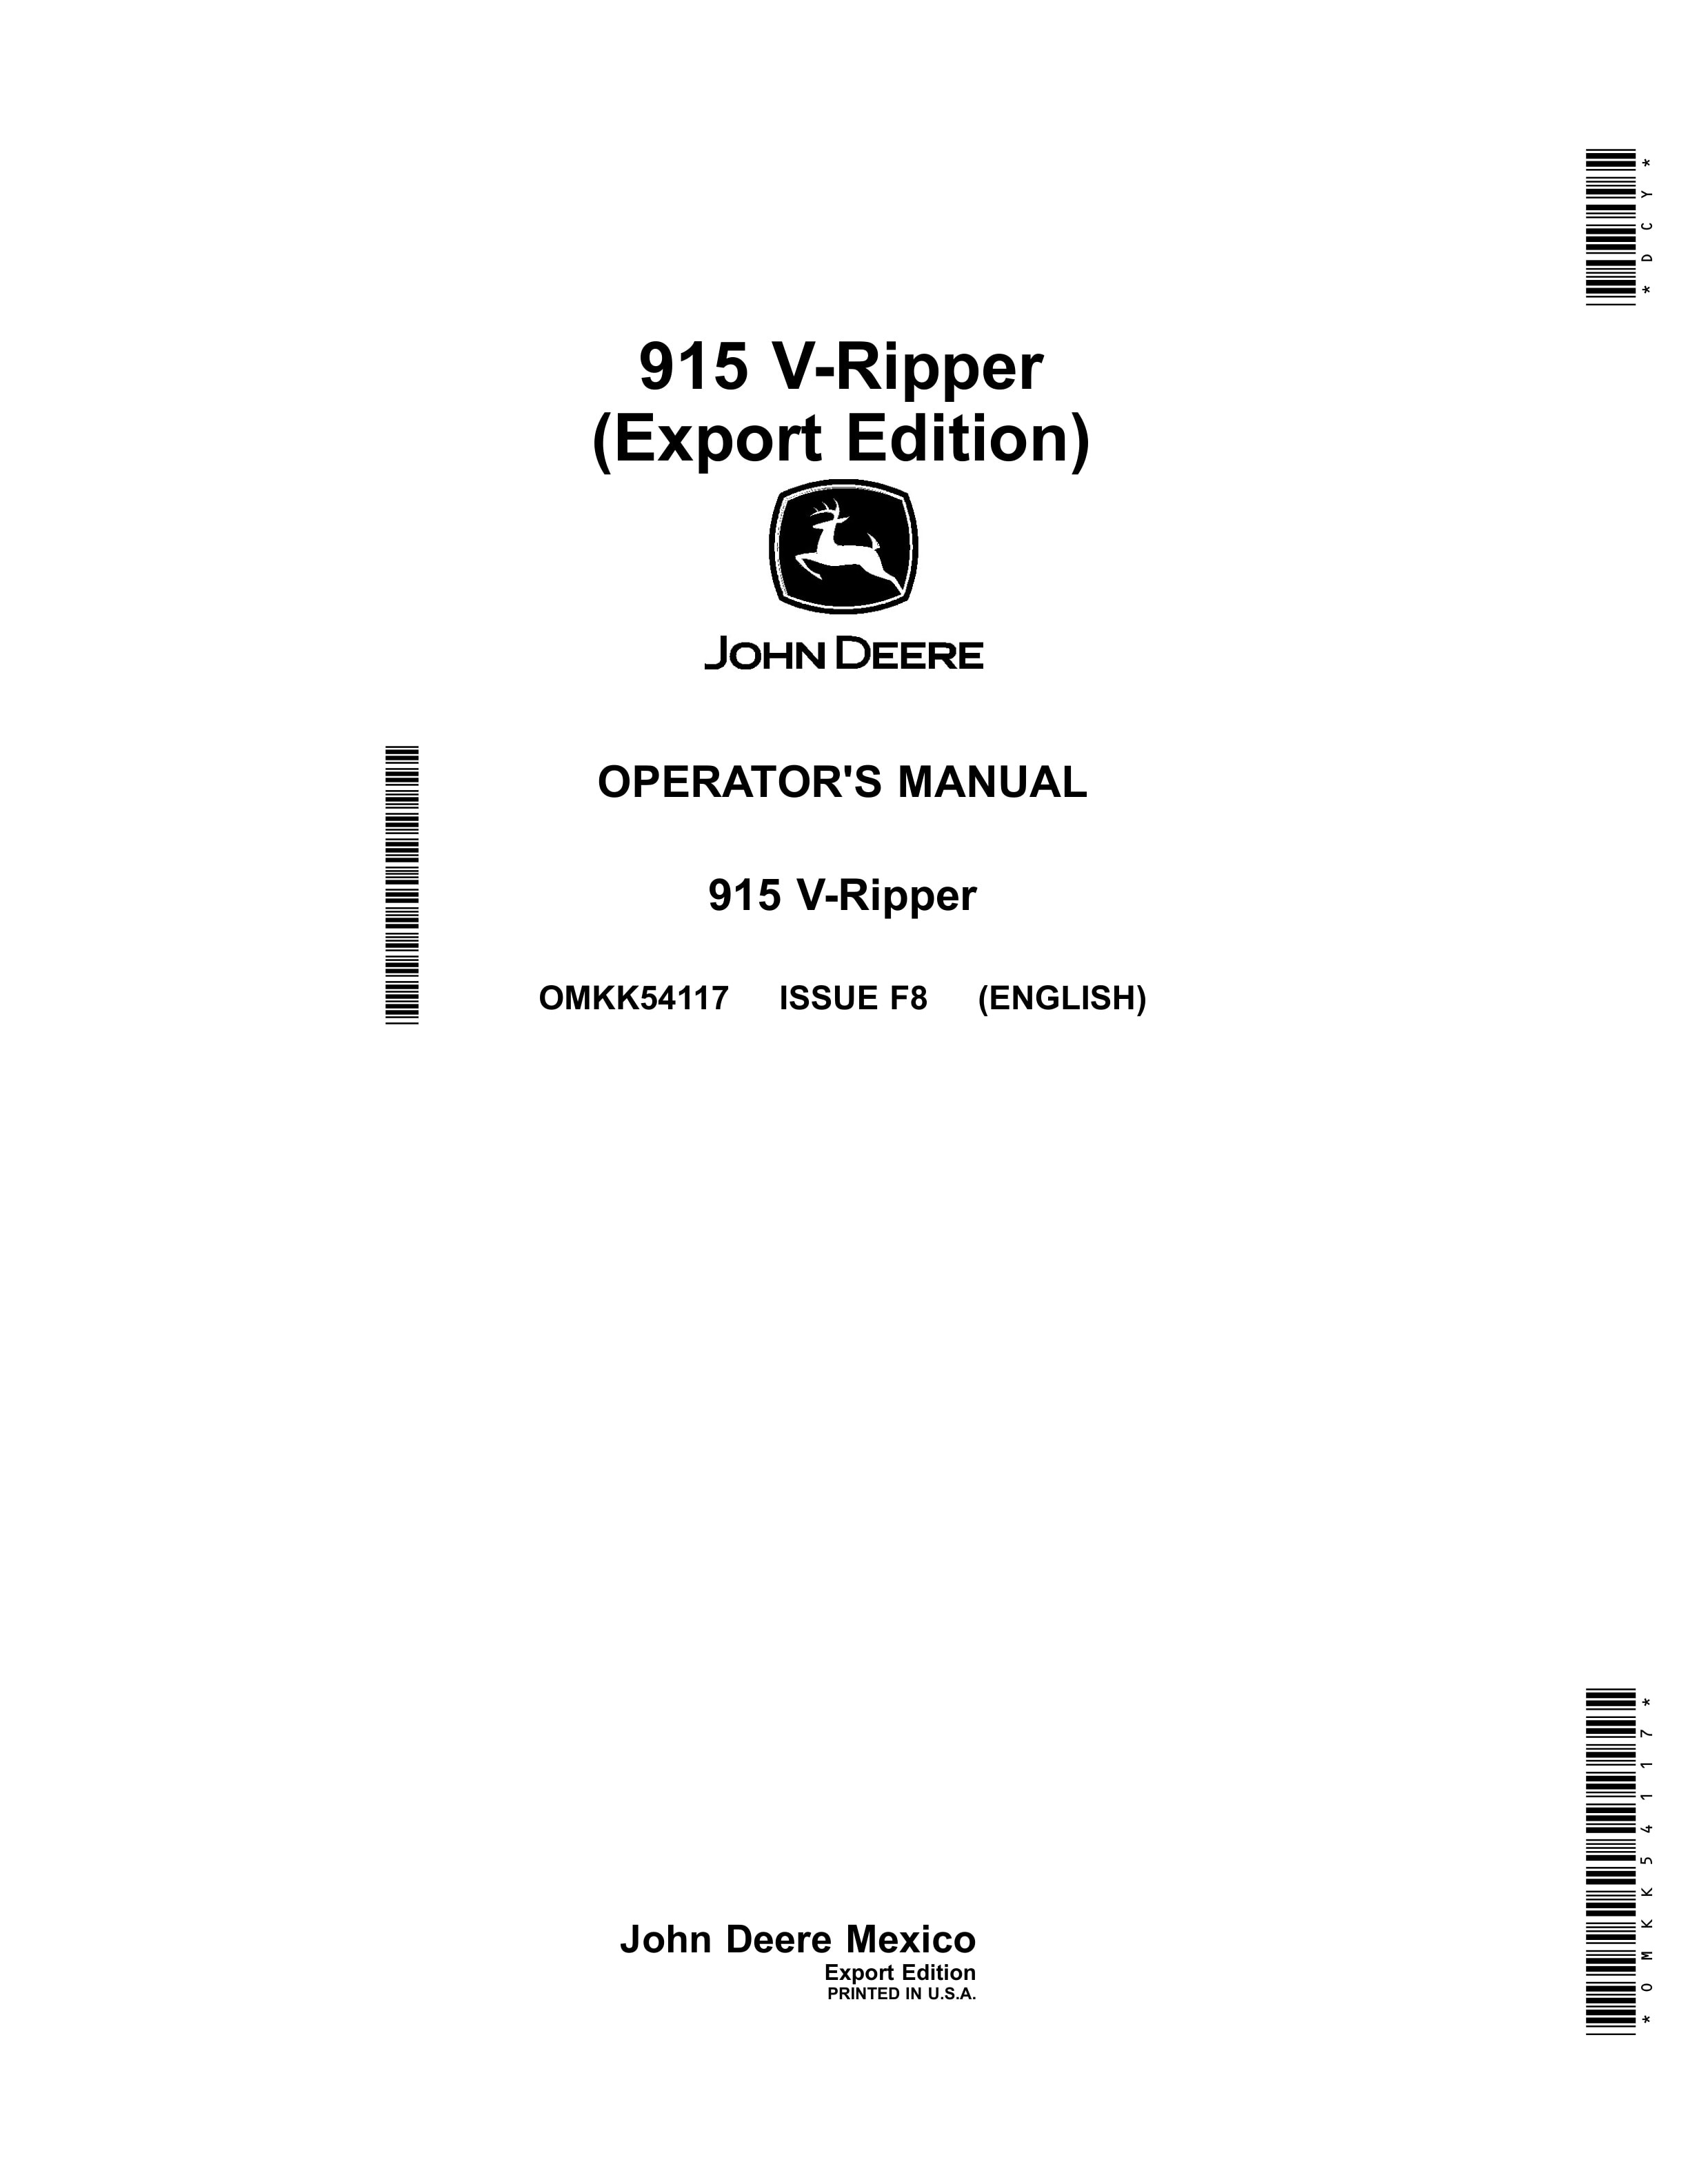 John Deere 915 V Ripper Operator Manual OMKK54117 1